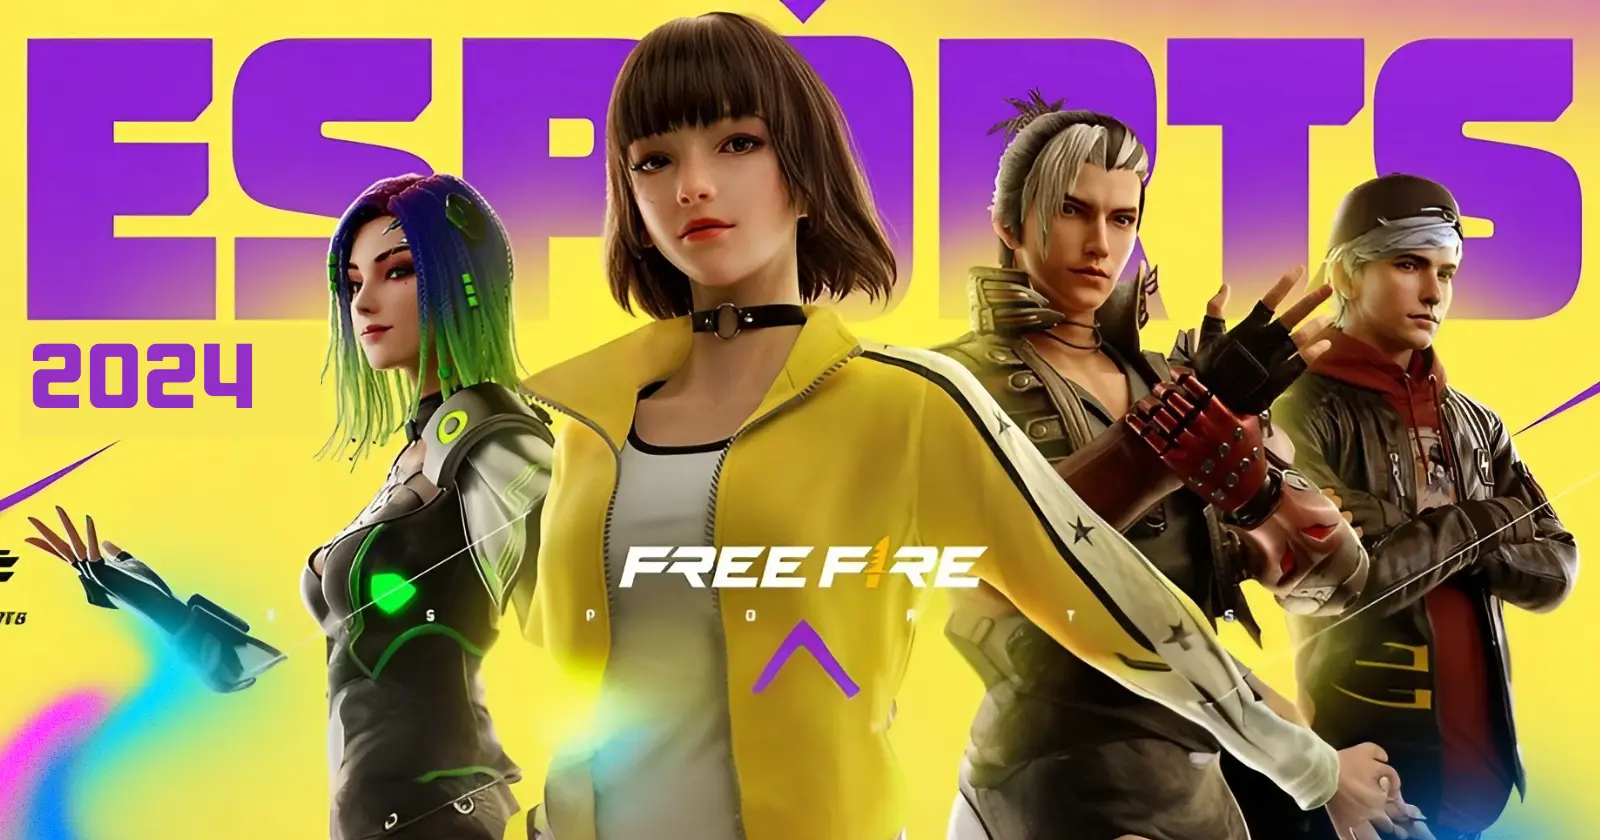 Futuristic Free Fire characters in vibrant eSports promo